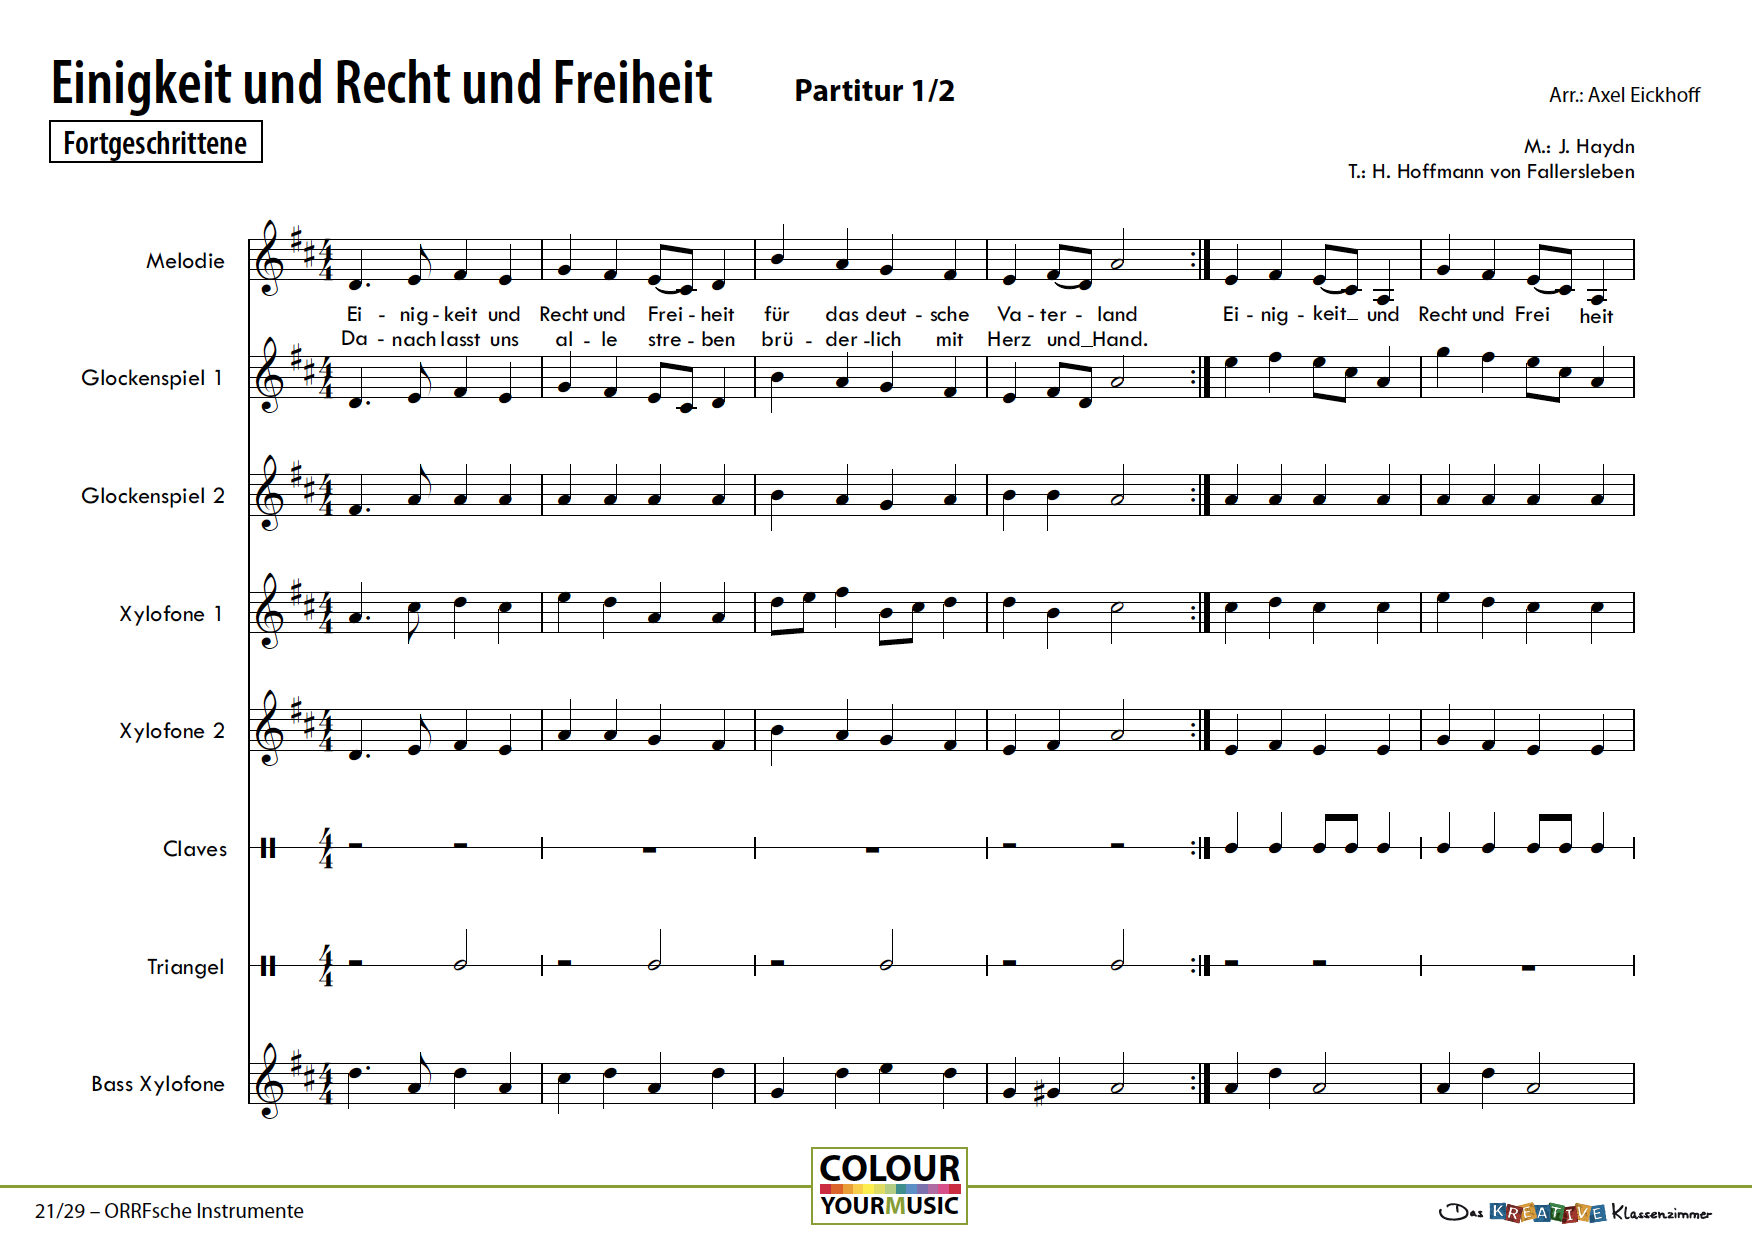 Einigkeit und Recht und Freiheit - Deutsche Nationalhymne - Orff